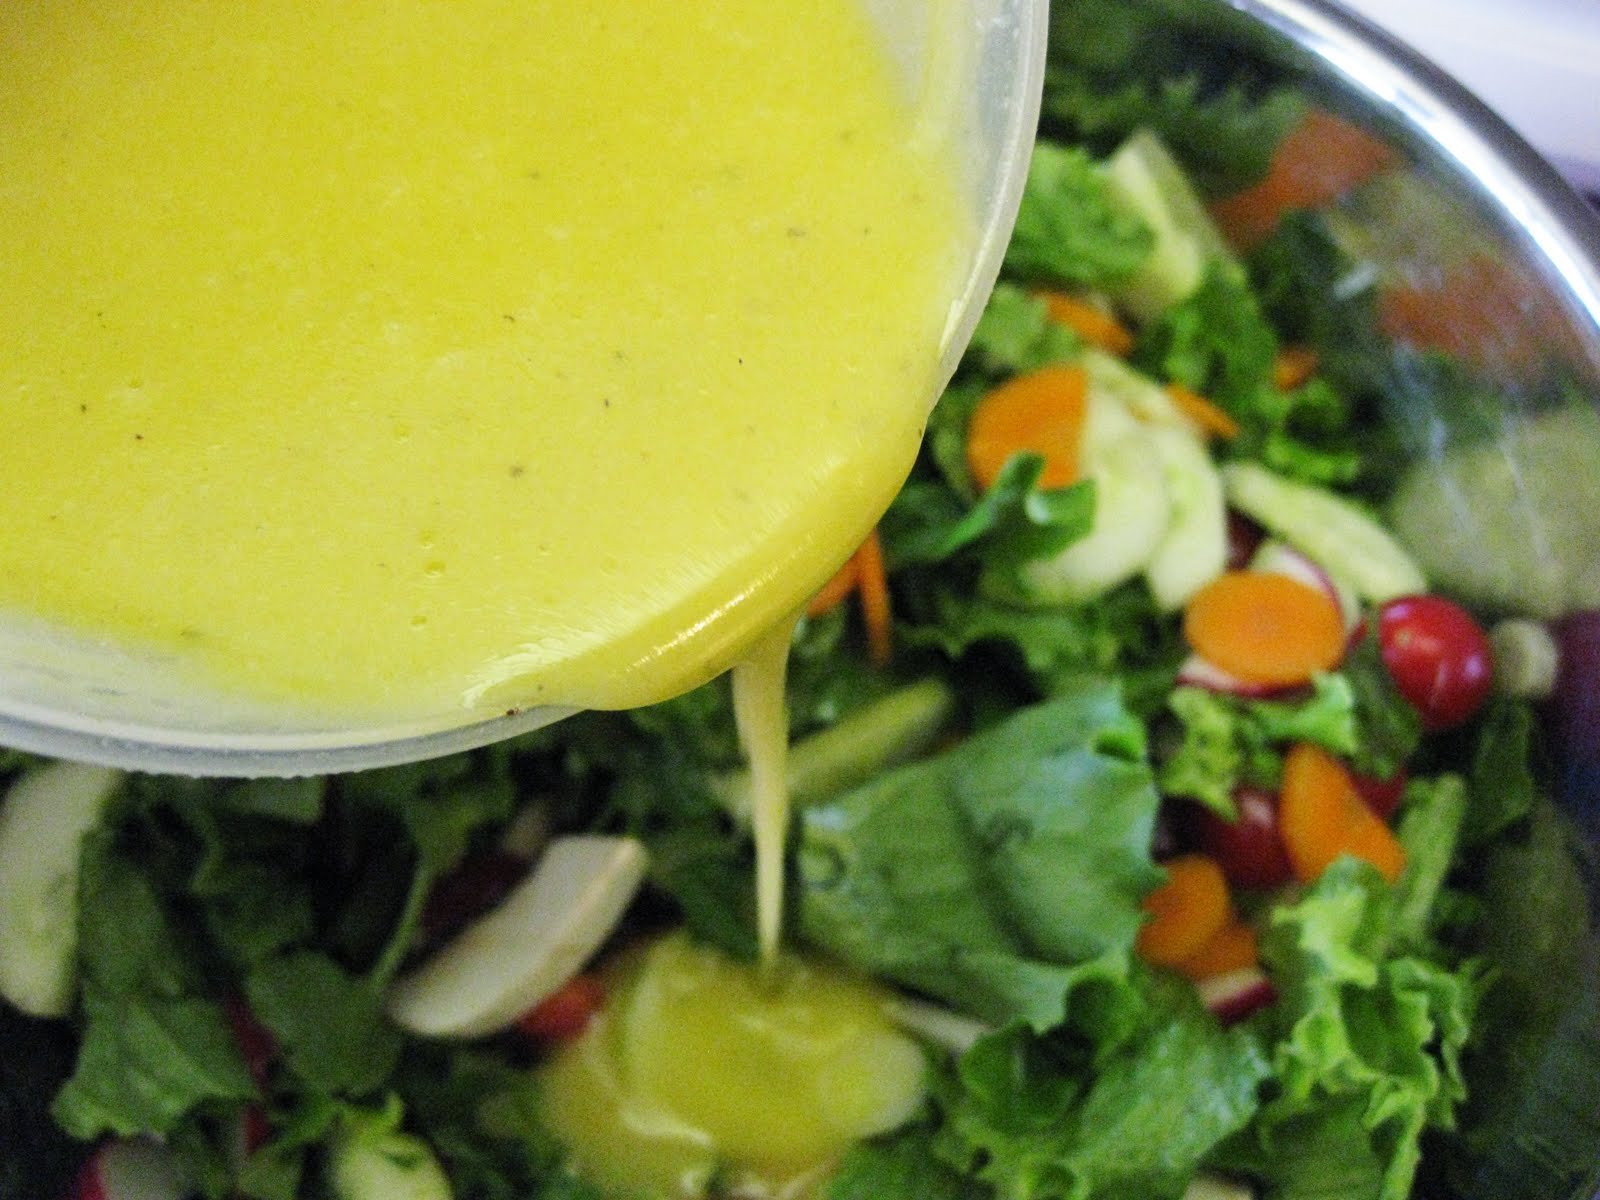 Рецепт заправки для салата из овощей. Горчичная заправка для салата. Горчичная заправка для салата из овощей. Овощной салат с горчично-лимонной заправкой. Соус для заправки салатов овощных.